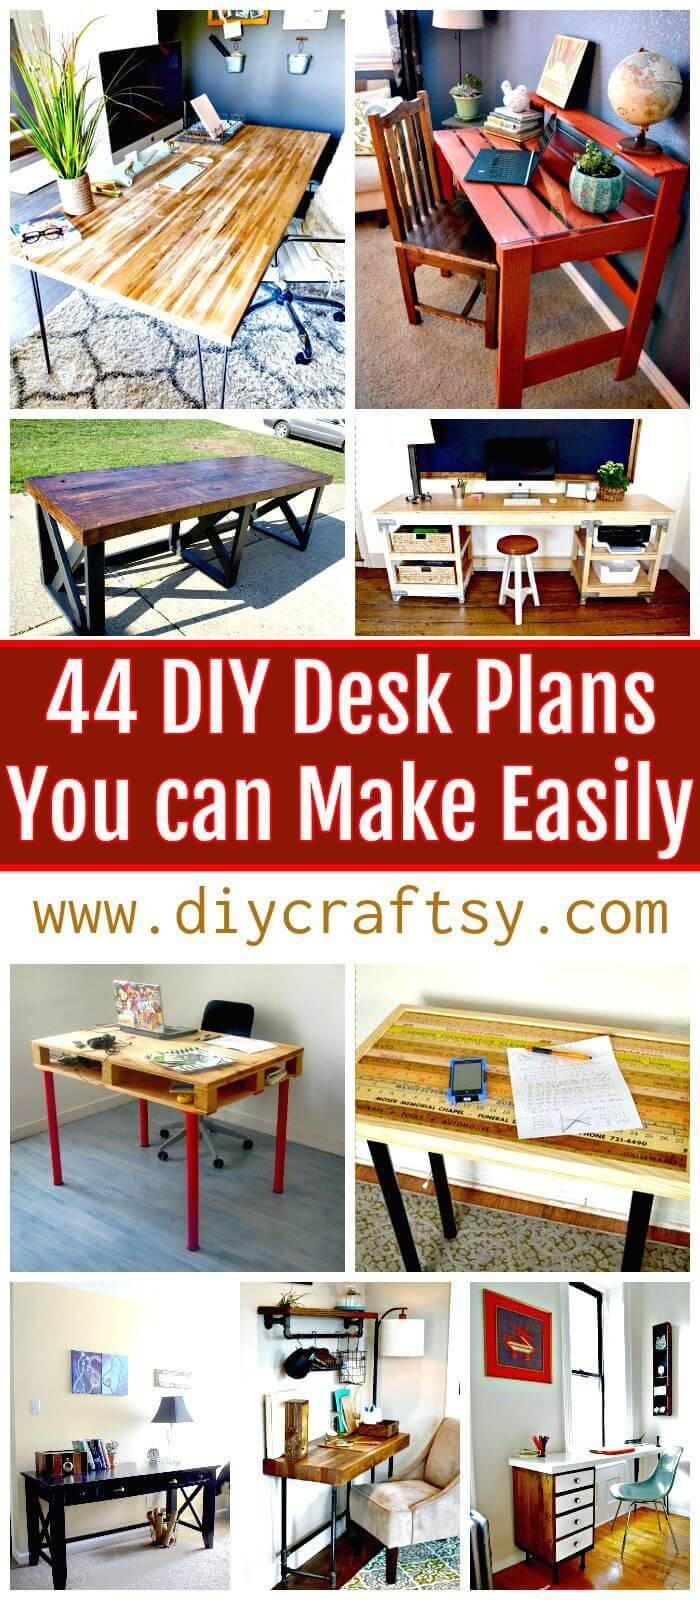 DIY Desk Plans - Top 44 DIY Desk Ideas You can Make Easily - DIY Crafts